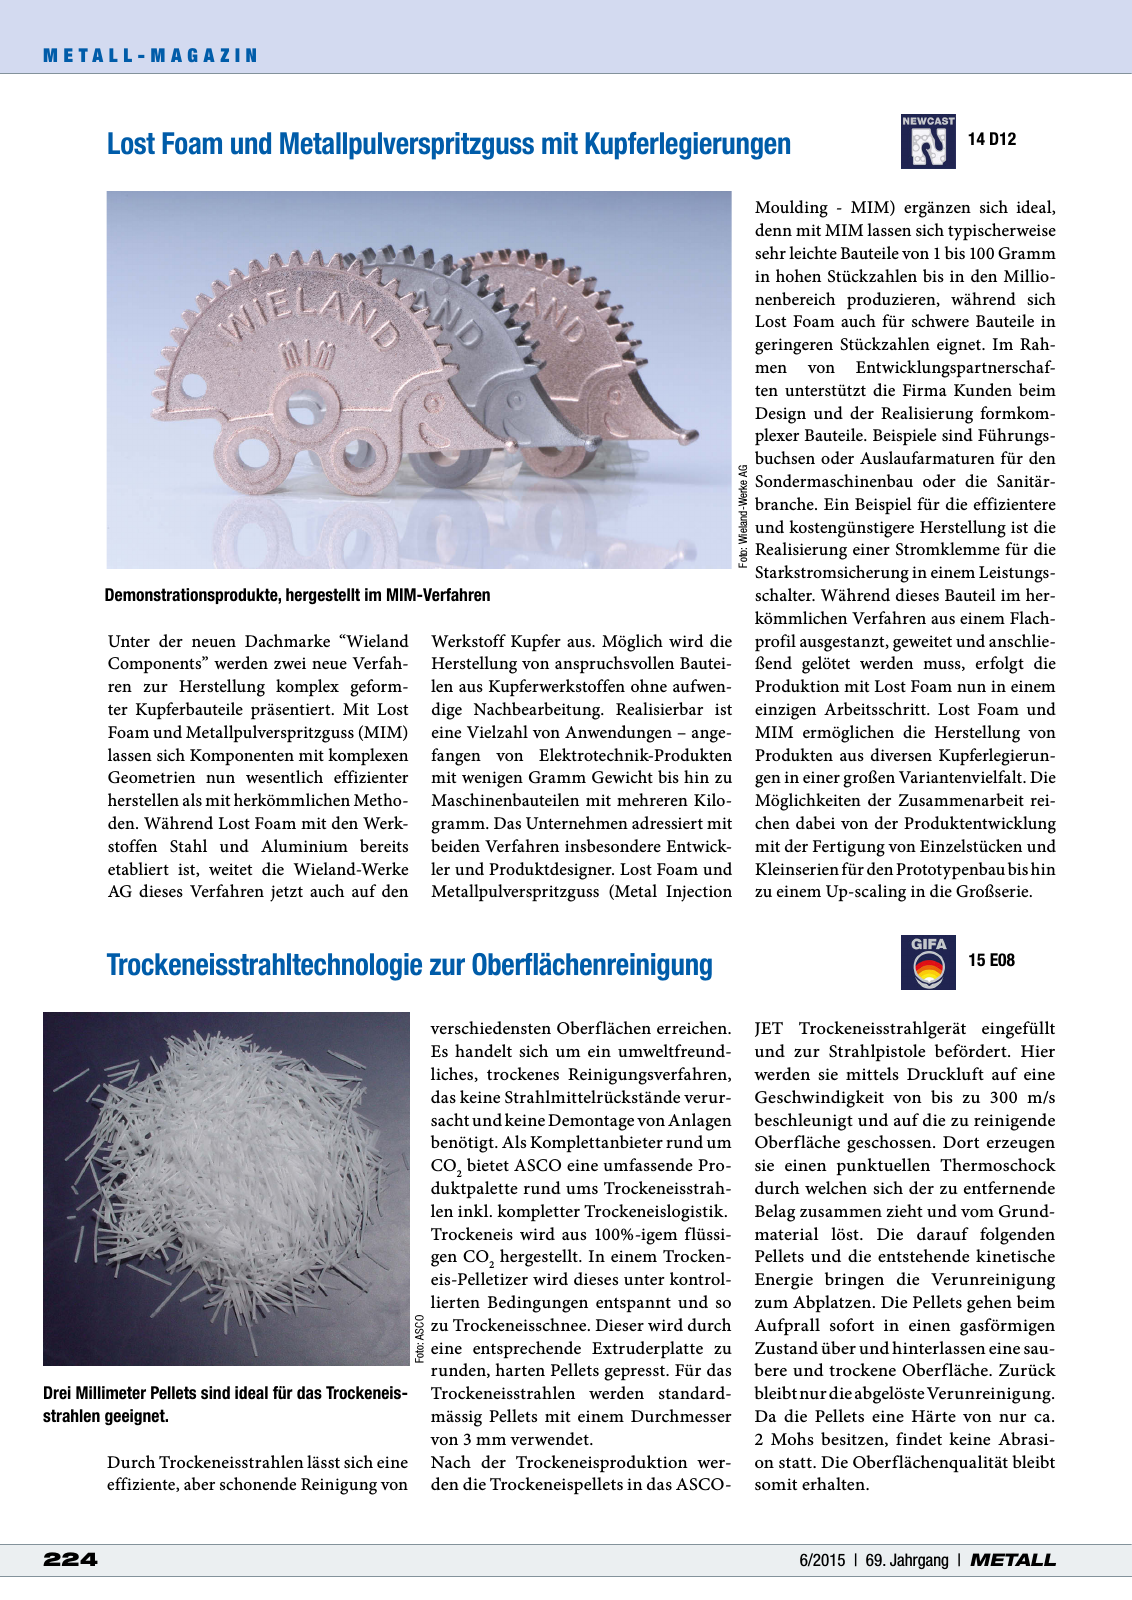 Vorschau METALL 6/2015 Seite 16